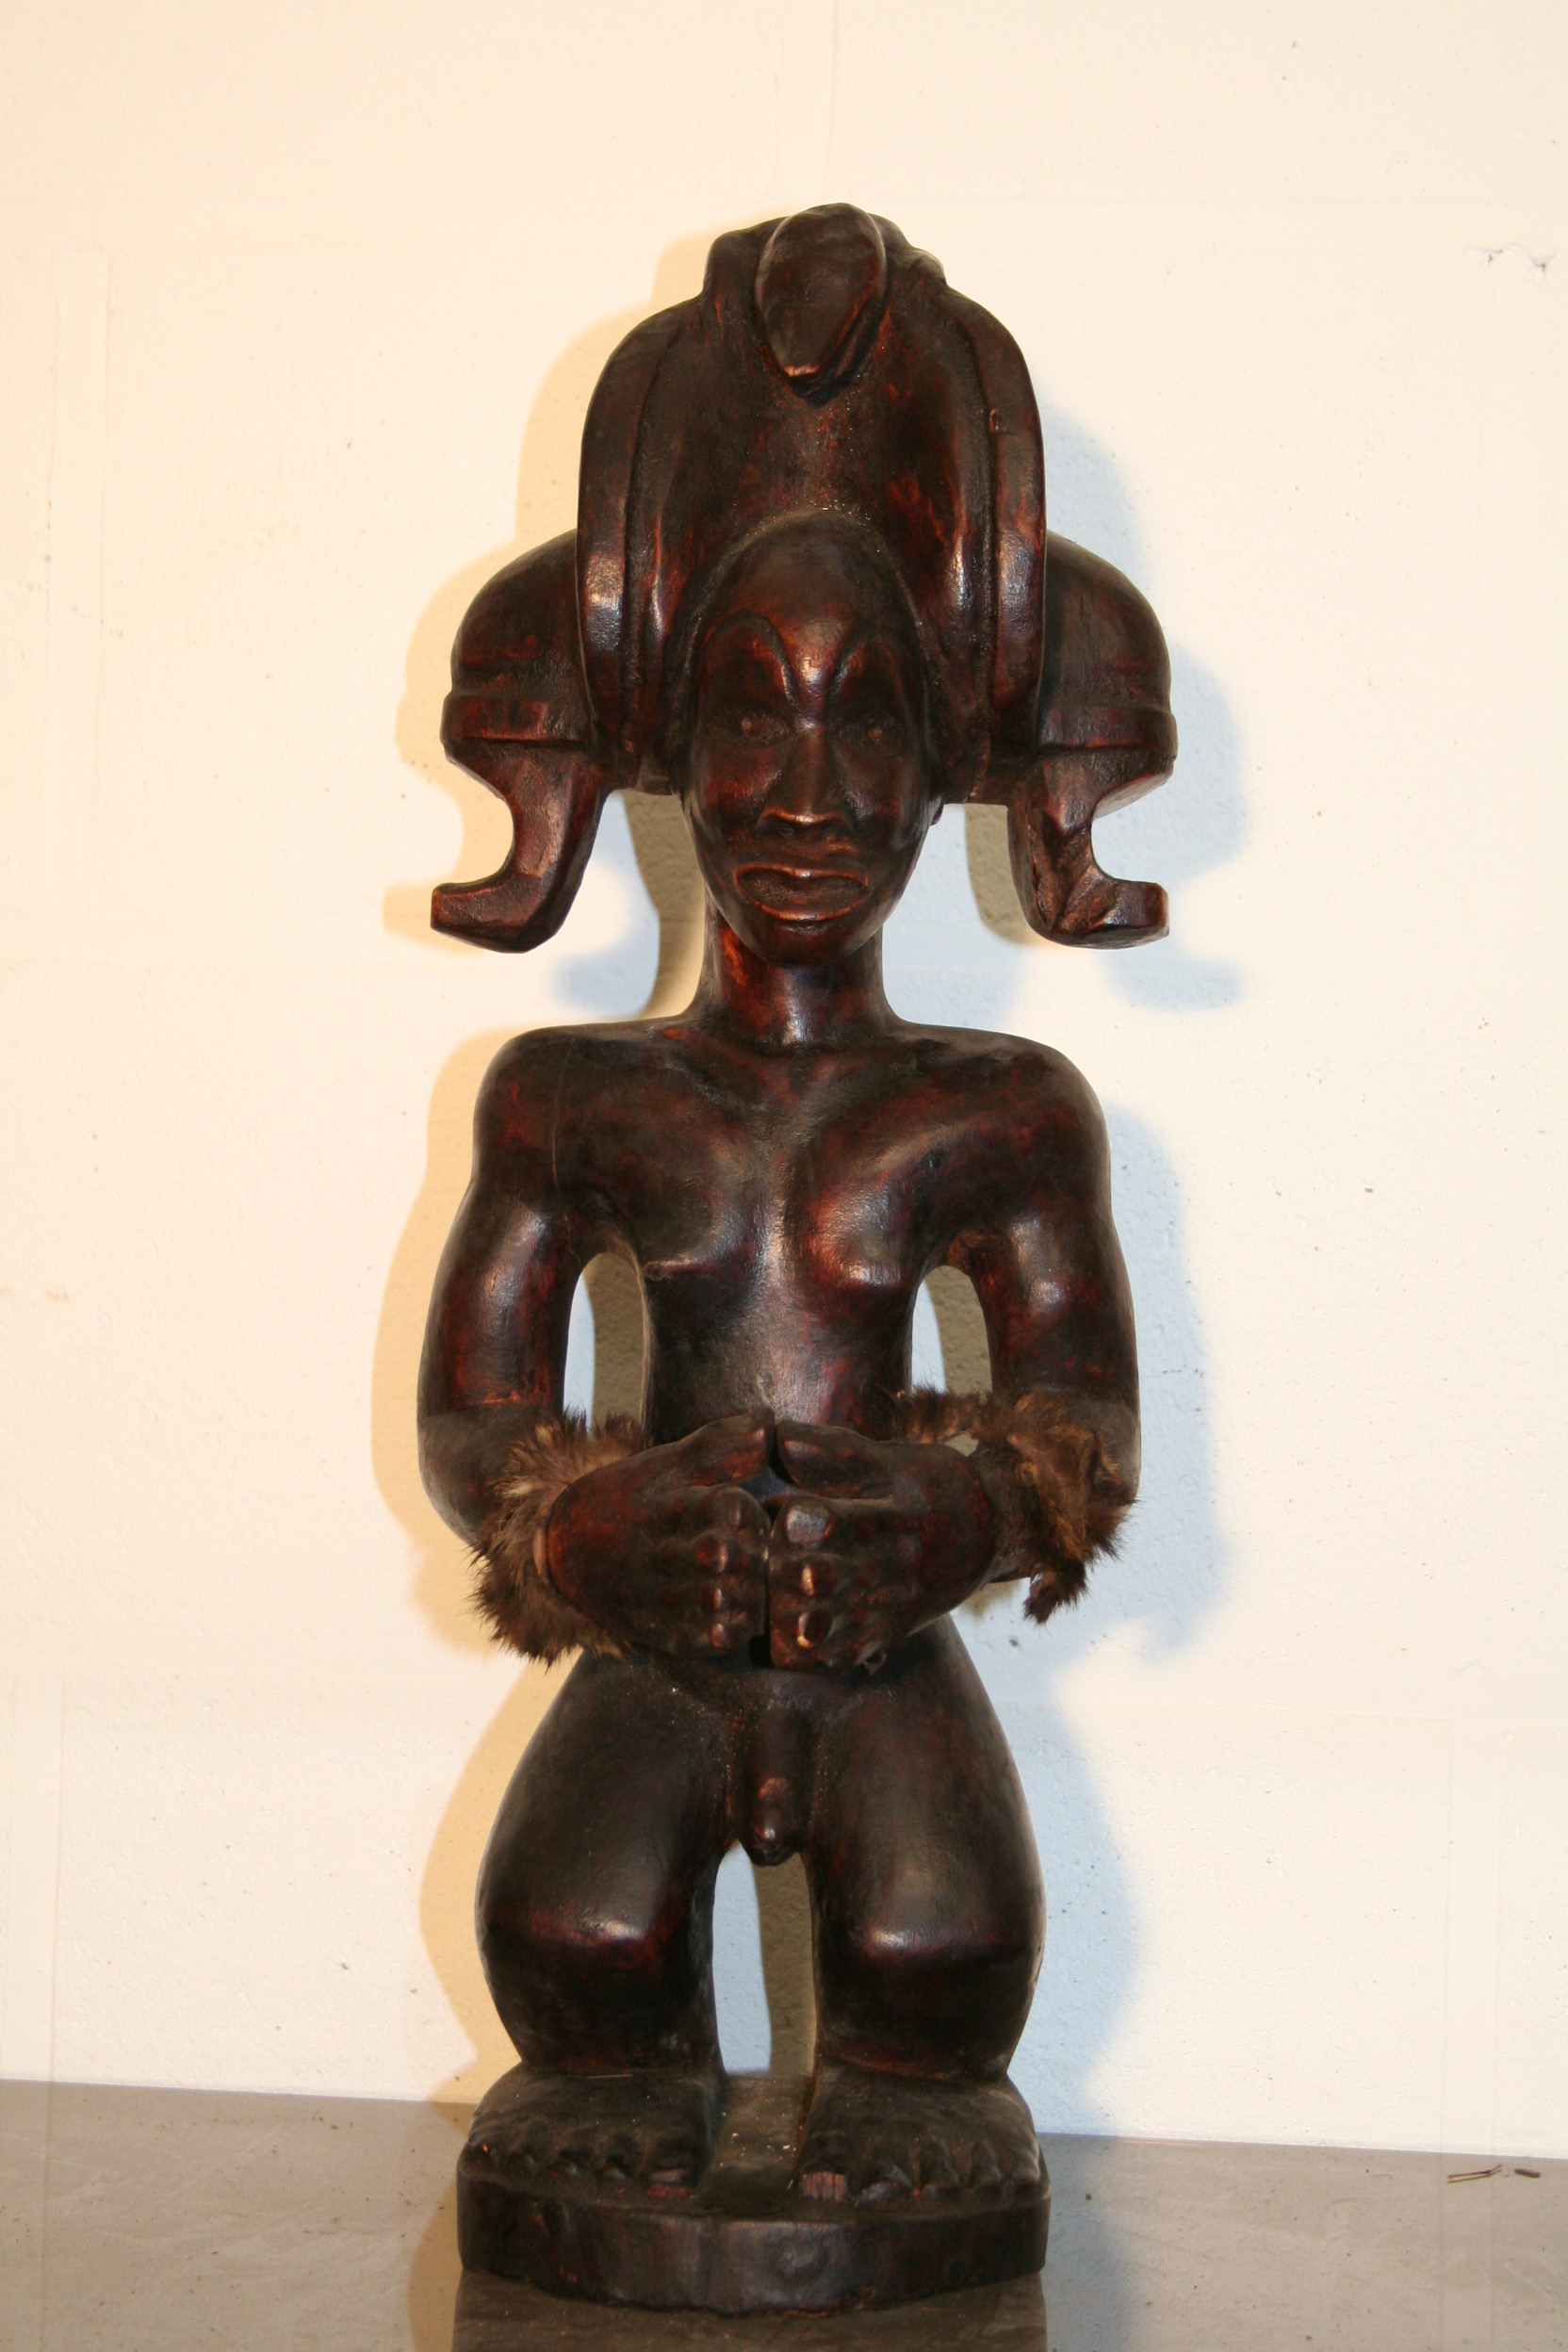 tchokwe(statue Tshibinga), d`afrique : R.d.du Congo, statuette tchokwe(statue Tshibinga), masque ancien africain tchokwe(statue Tshibinga), art du R.d.du Congo - Art Africain, collection privées Belgique. Statue africaine de la tribu des tchokwe(statue Tshibinga), provenant du R.d.du Congo, 1648:statue représentant Tshibinga Ilunga,l